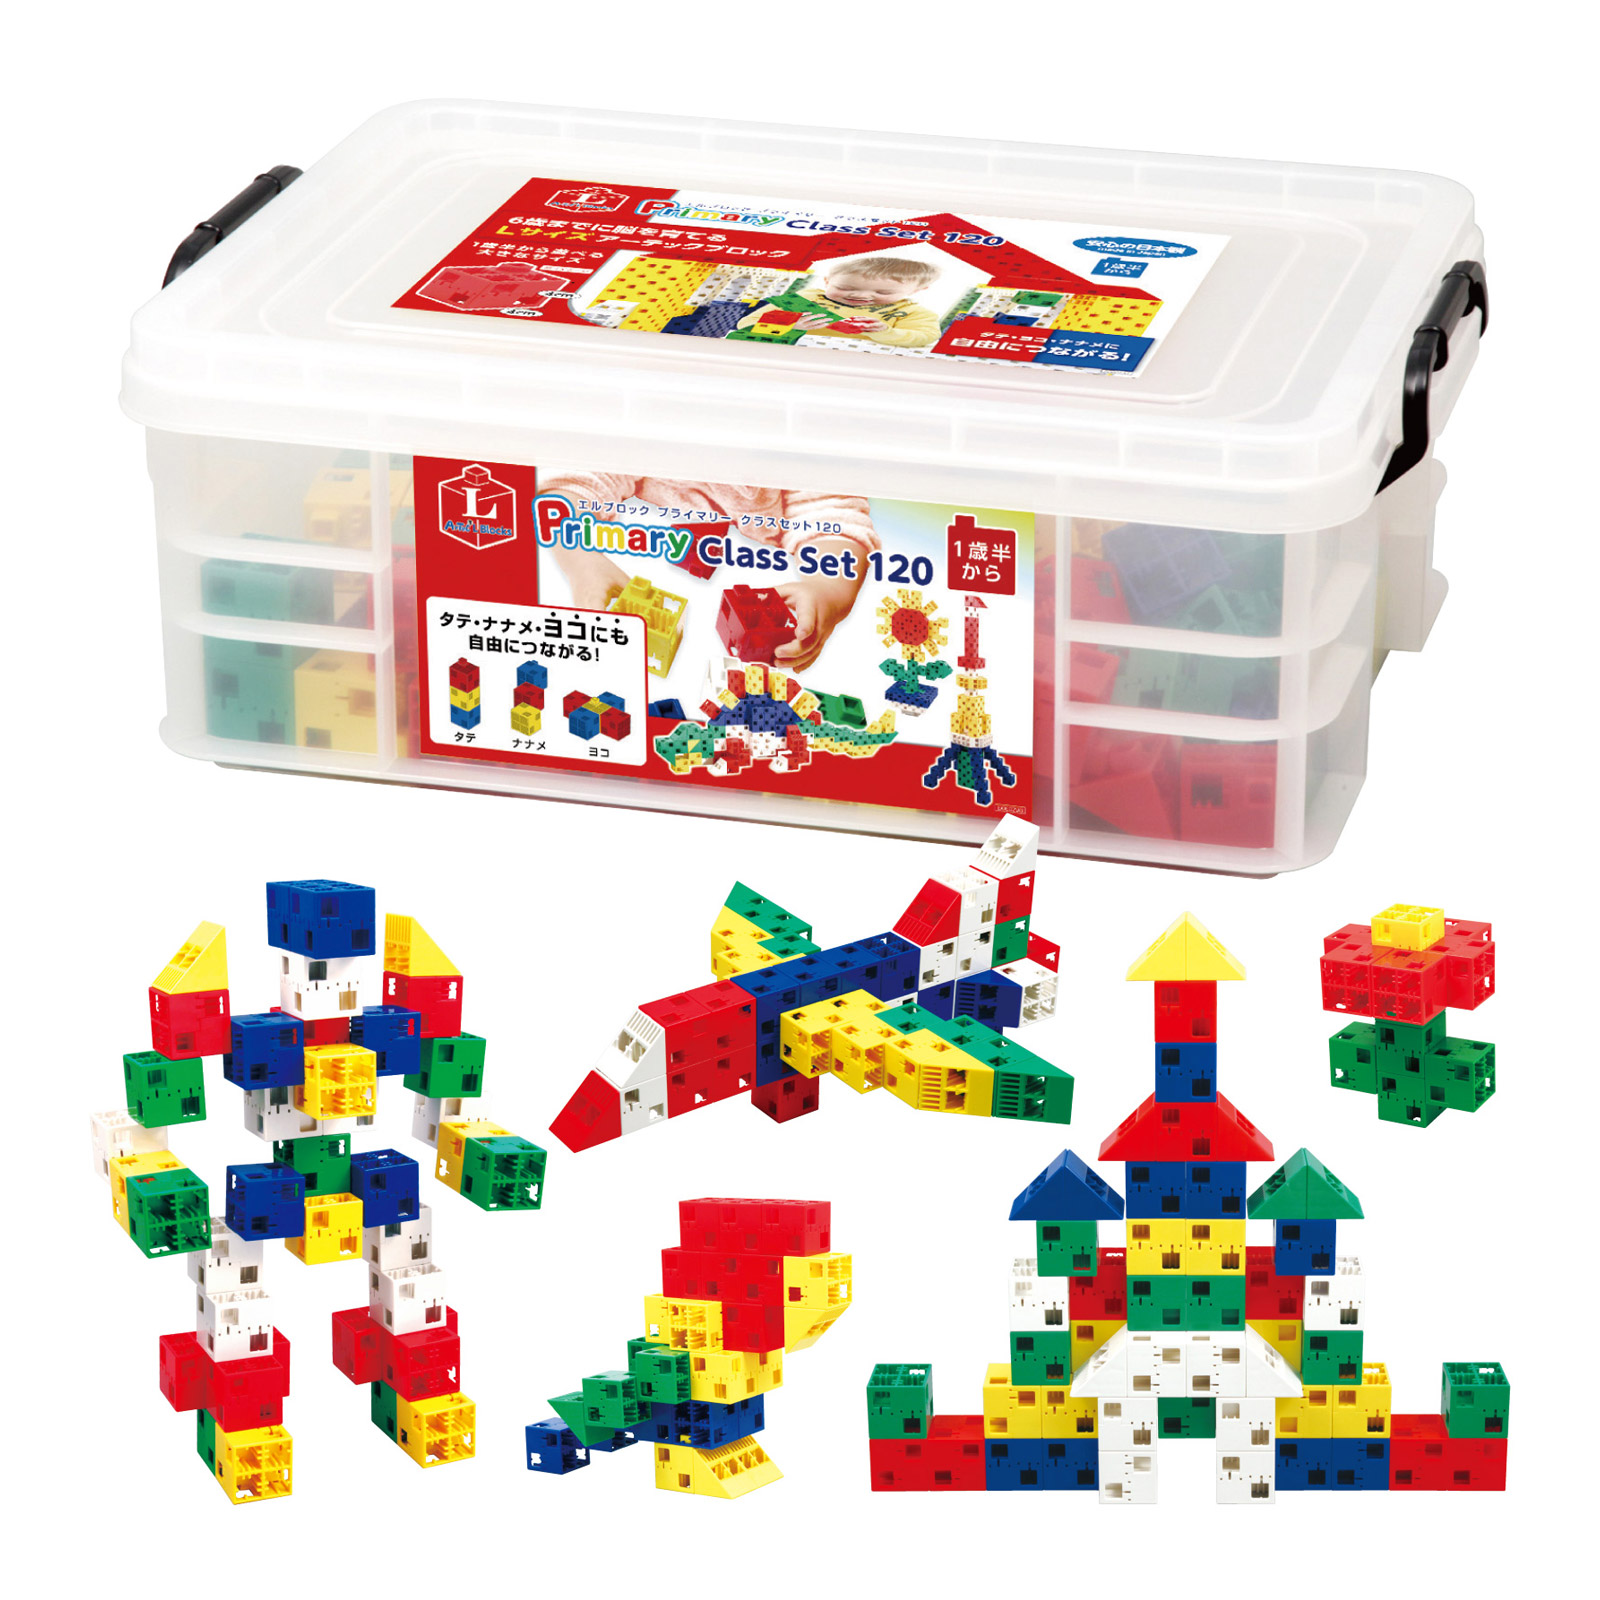 【楽天市場】アーテックブロック L ブロック おもちゃ プライマリー クラスセット 120ピース 日本製 ゲーム 玩具 レゴ・レゴブロックの